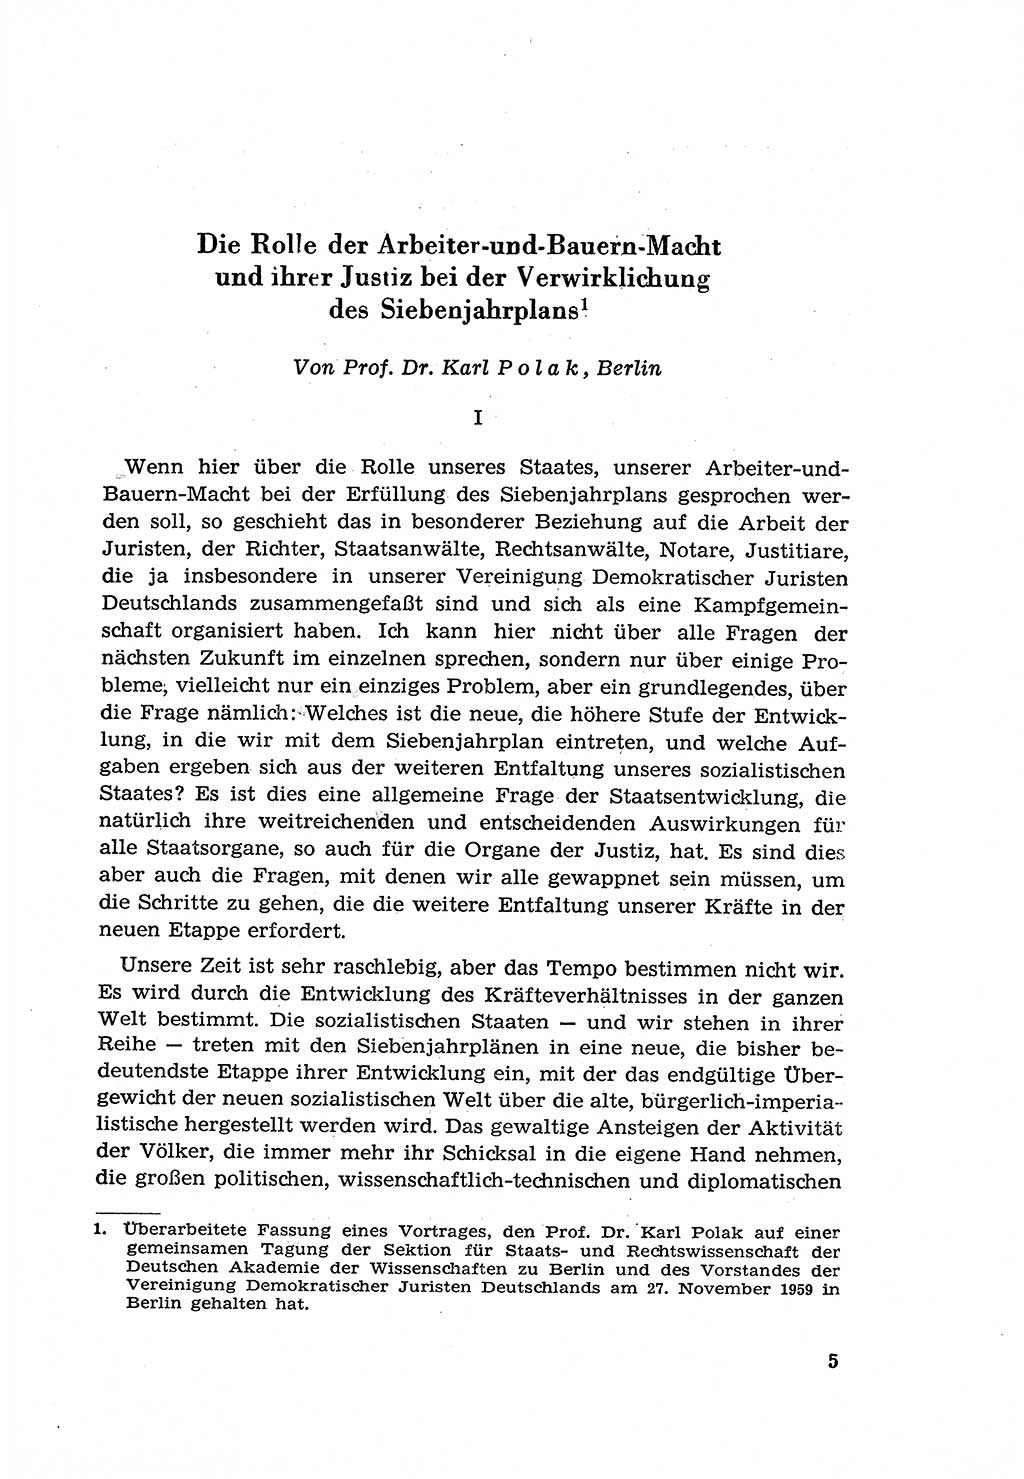 Zur Entwicklung des sozialistischen Strafrechts der Deutschen Demokratischen Republik (DDR) 1960, Seite 5 (Entw. soz. Strafr. DDR 1960, S. 5)